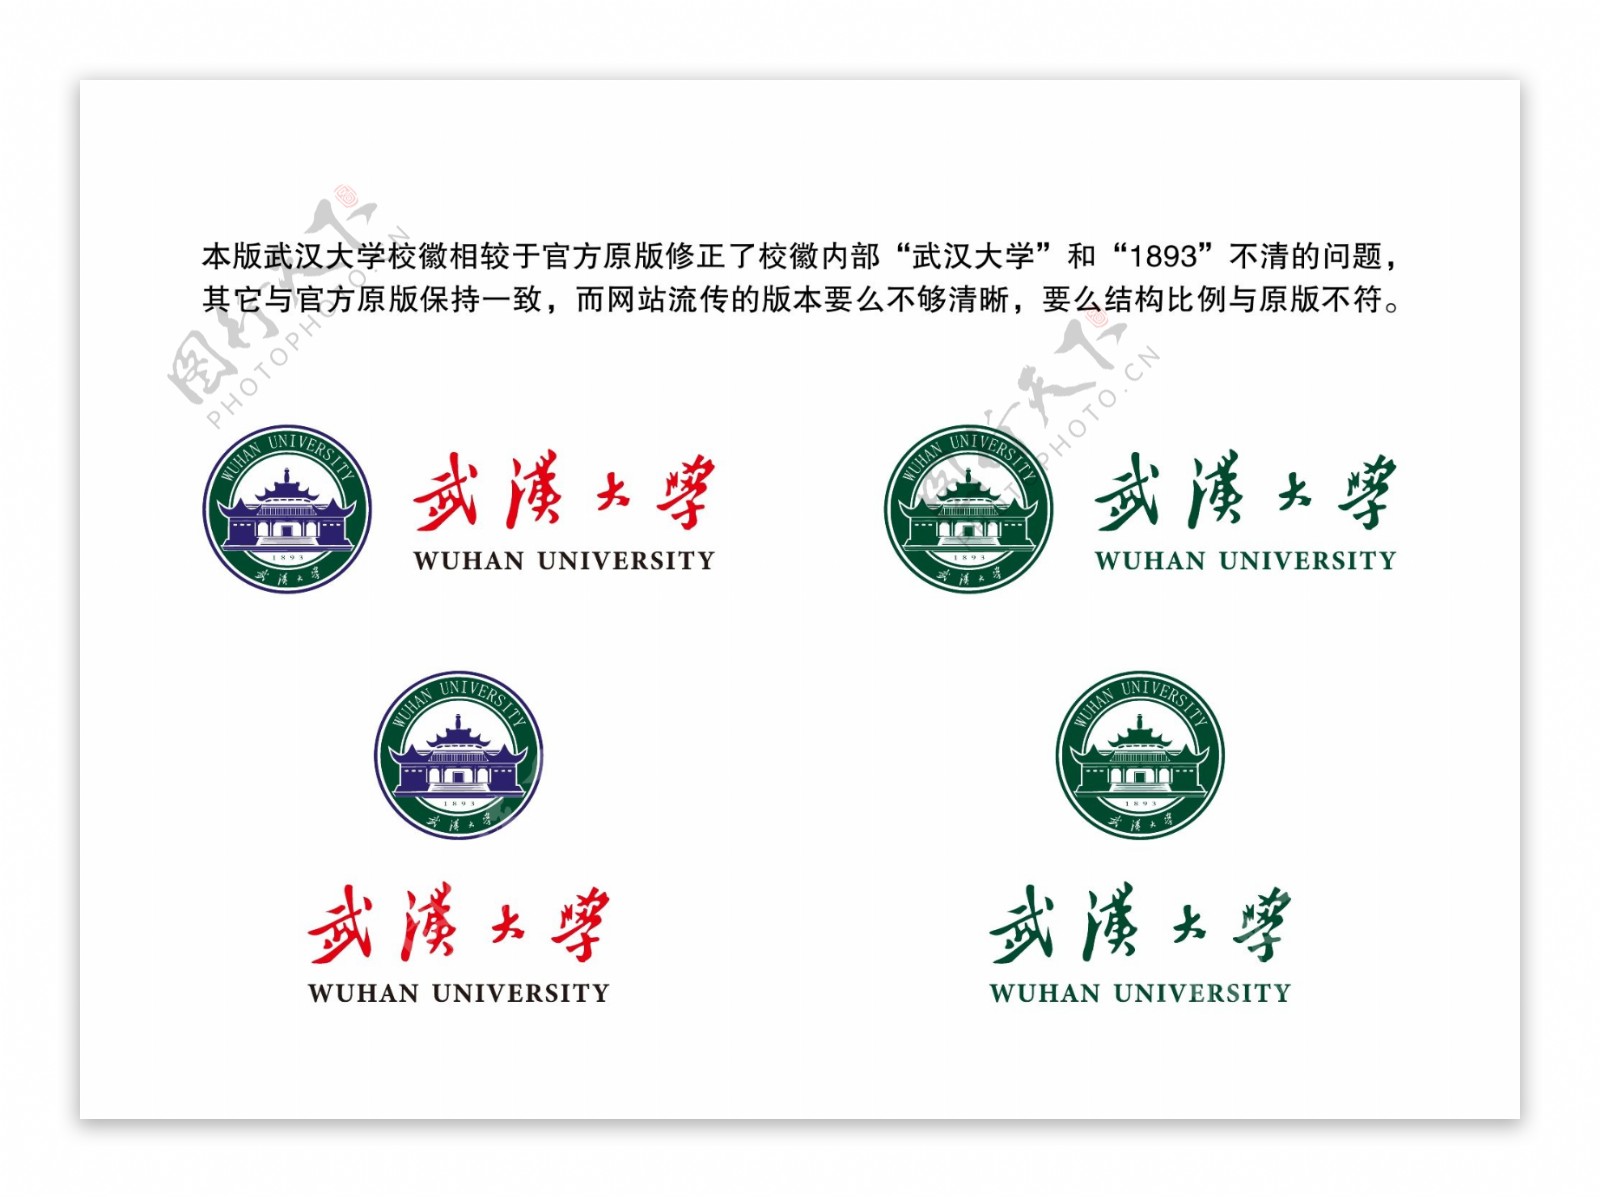 武汉大学校徽新版